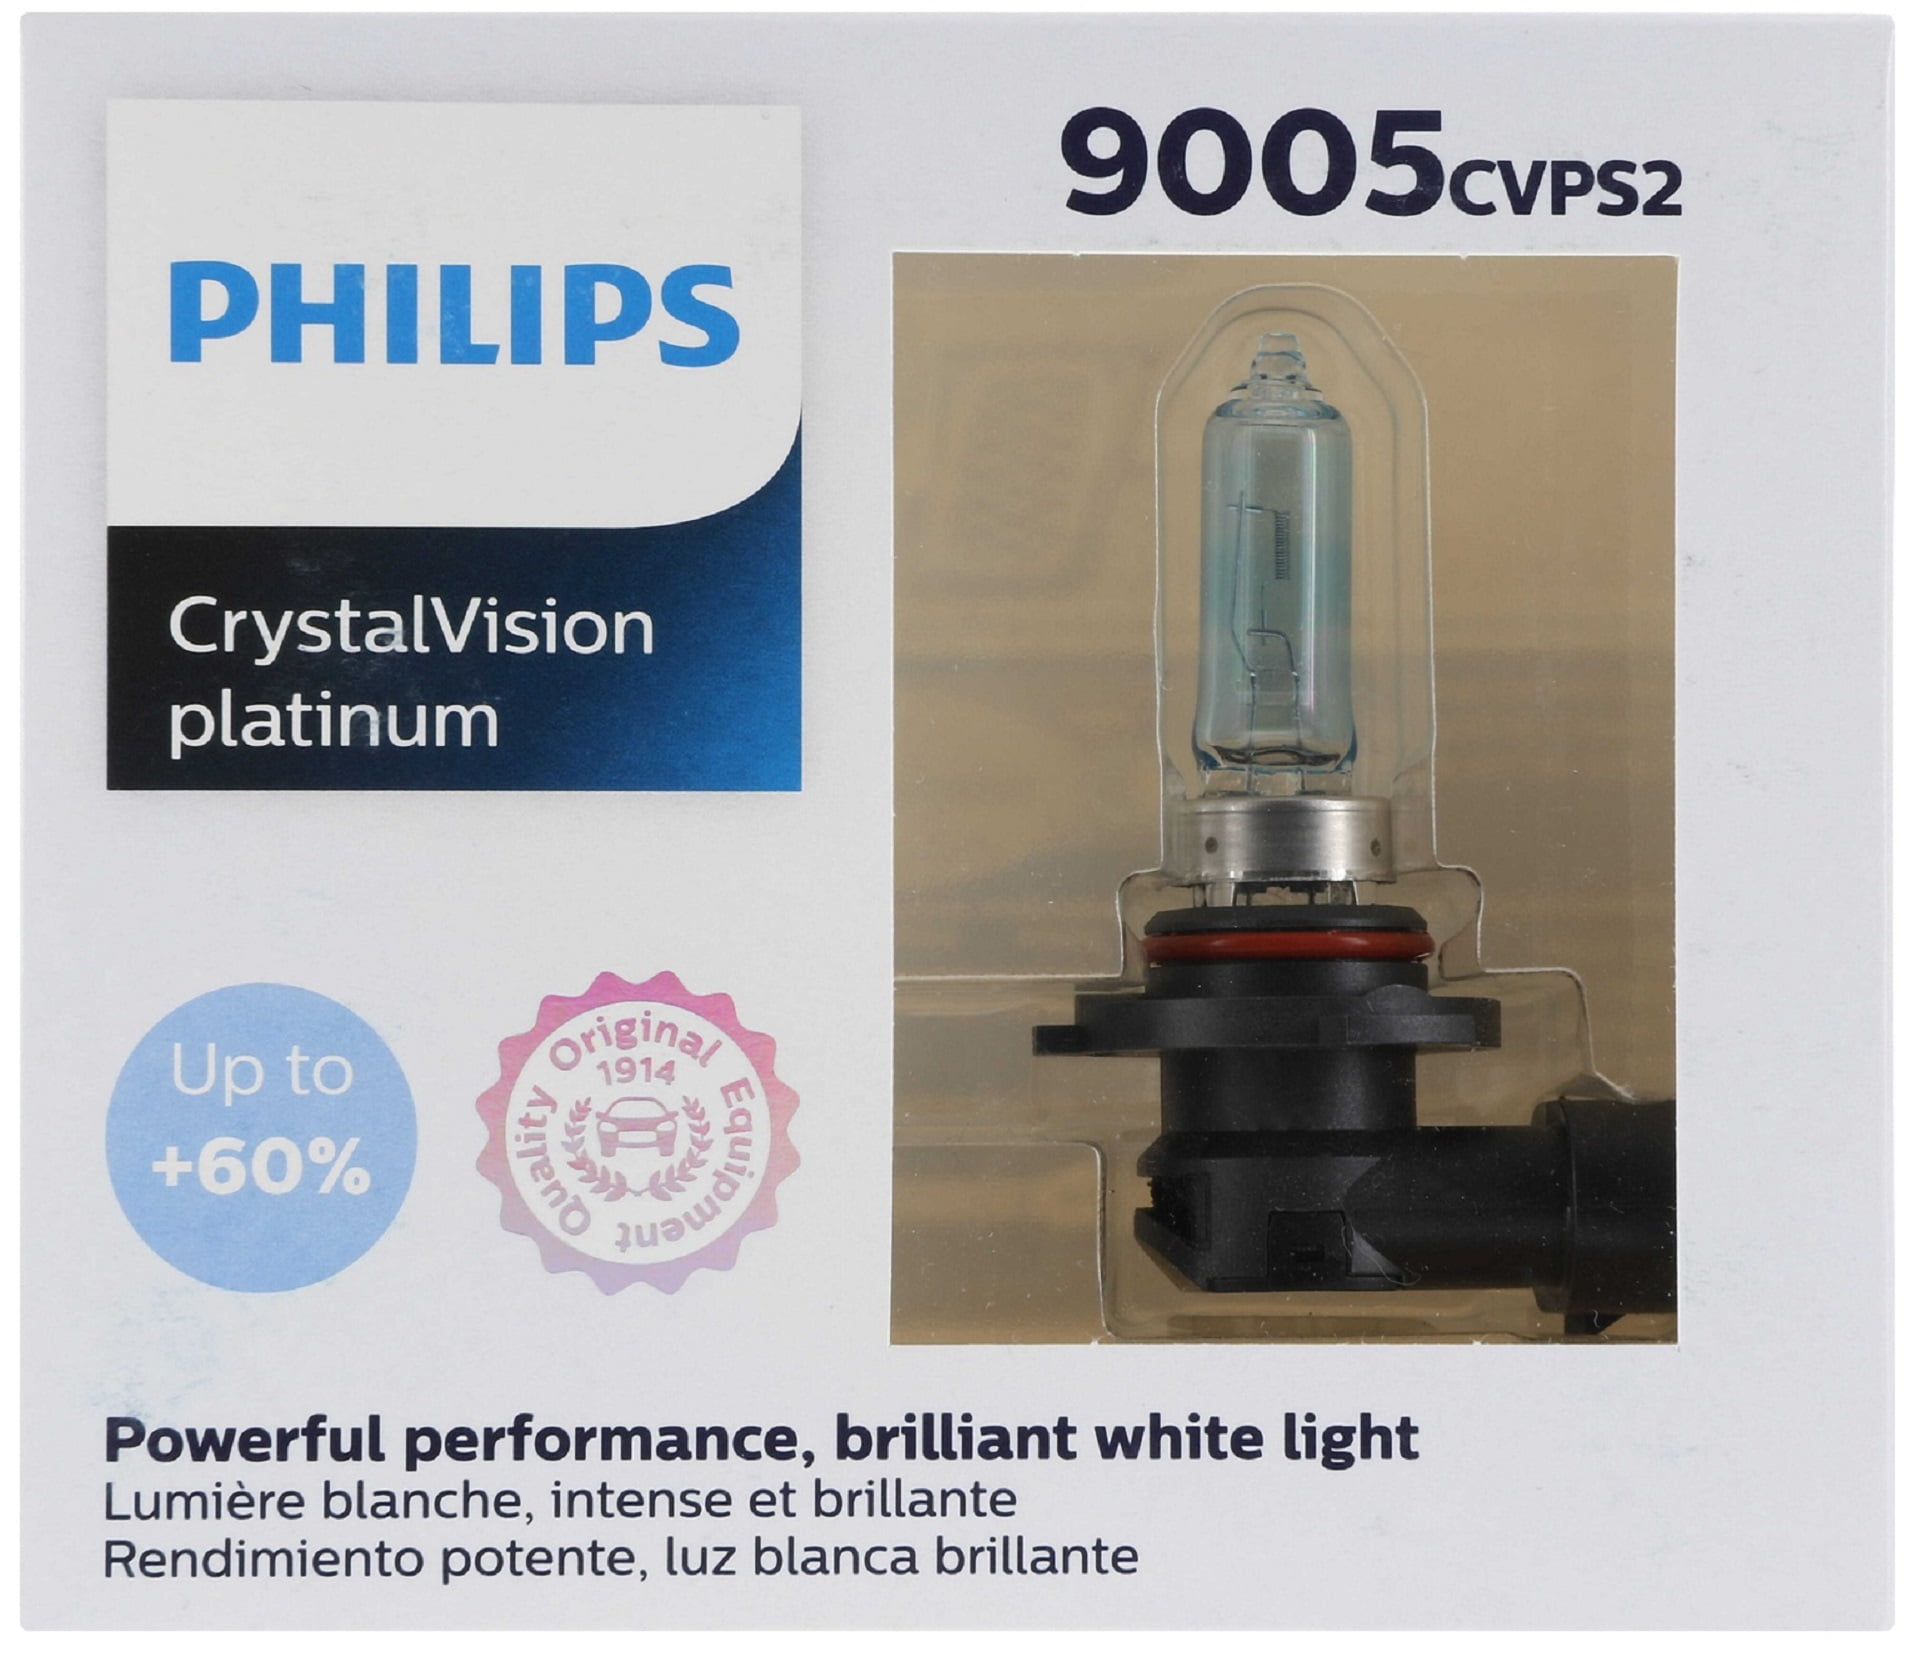 Ampoule hb3 Philips - Équipement auto